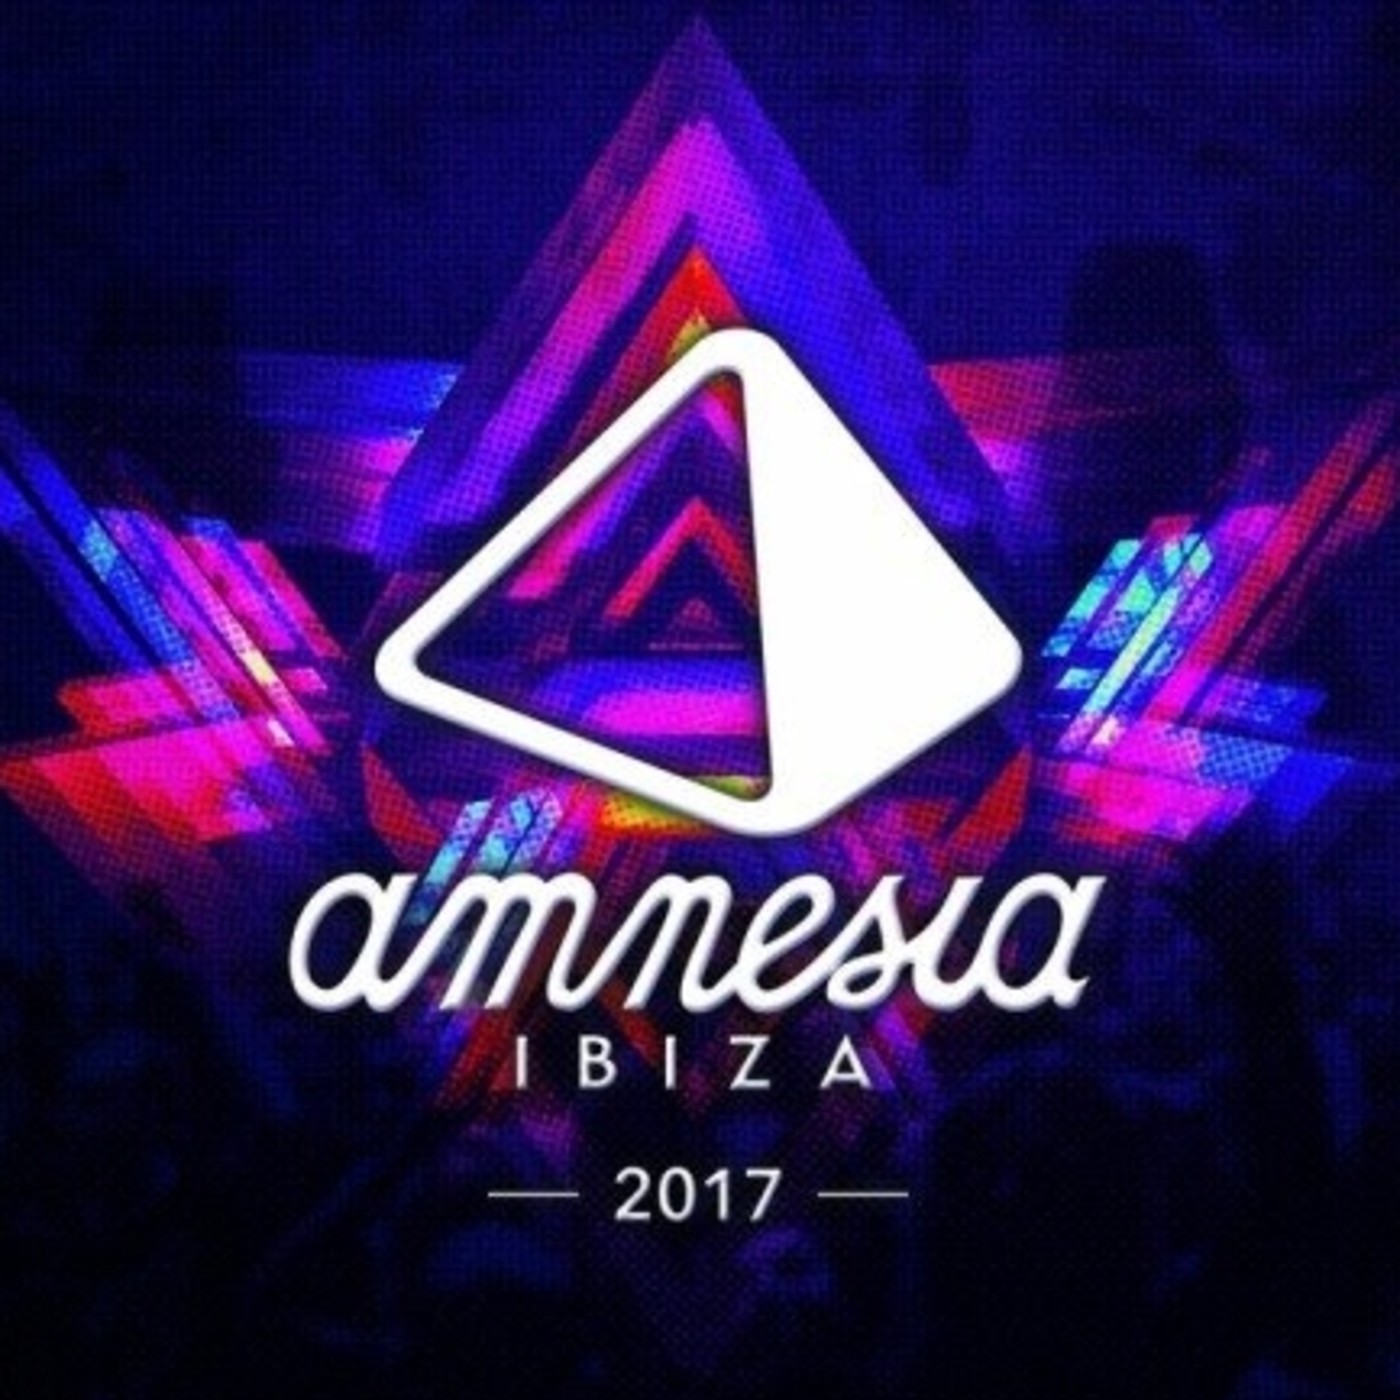 Amnesia Ibiza 2017 En Dj Session En Mp3 29 07 A Las 10 57 00 02 22 16 20057469 Ivoox